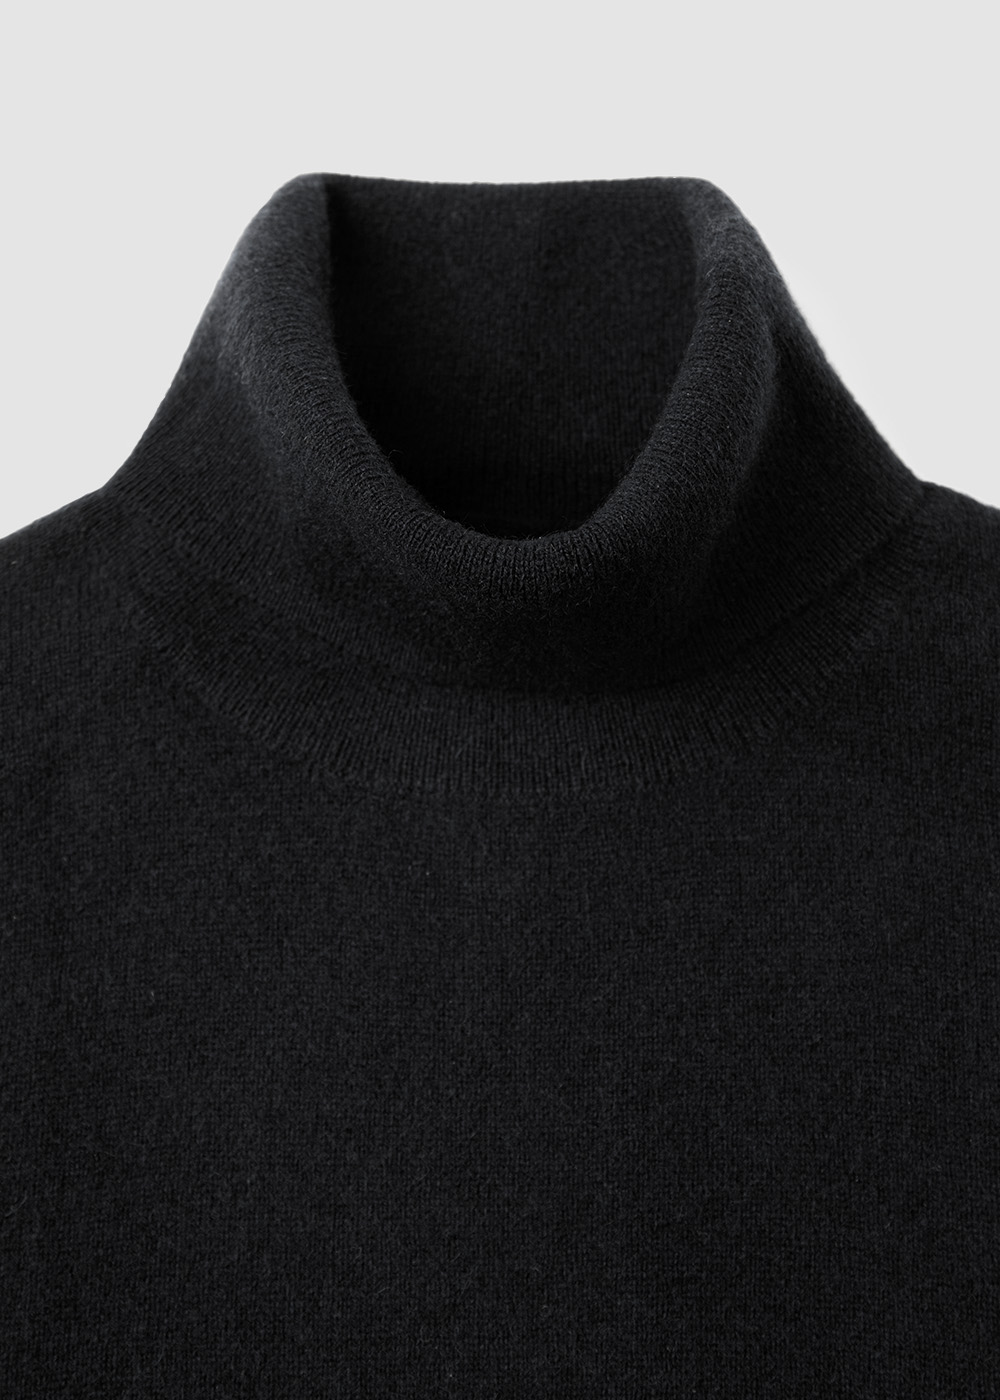 Cashmere 10% Blended Turtleneck Knit _ black